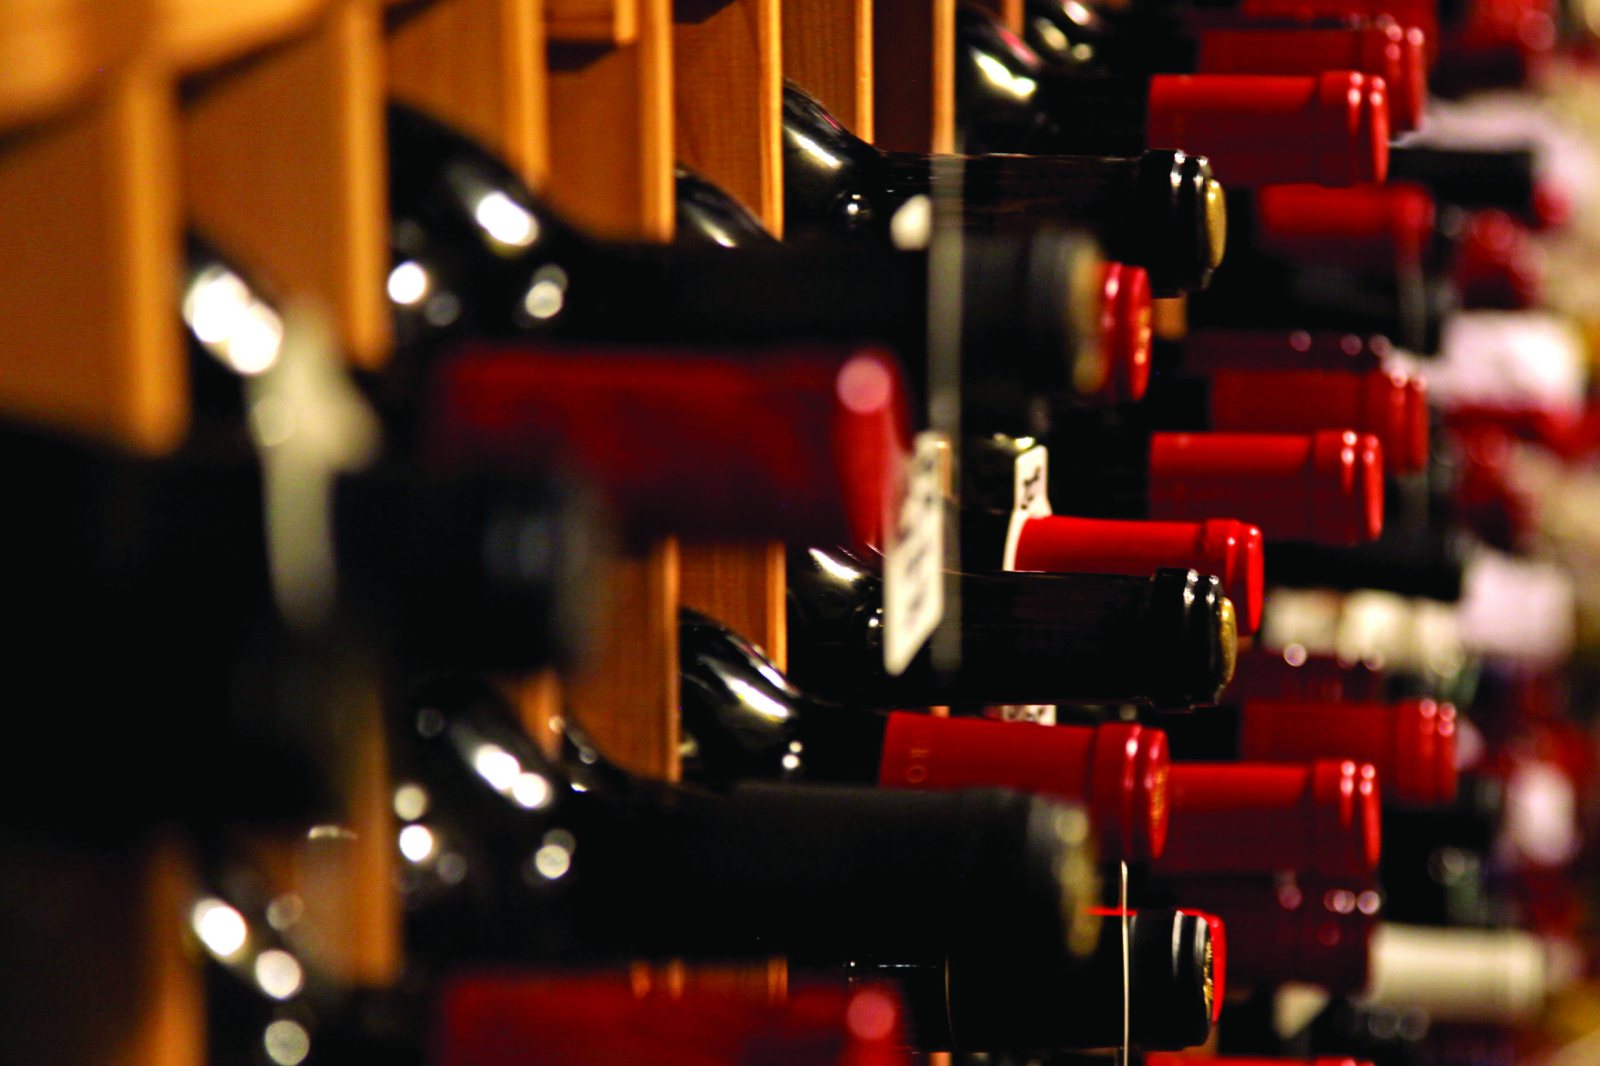 Krifca: 75 etiketa vere shqiptare në panairin më të madh të verërave në botë në Verona